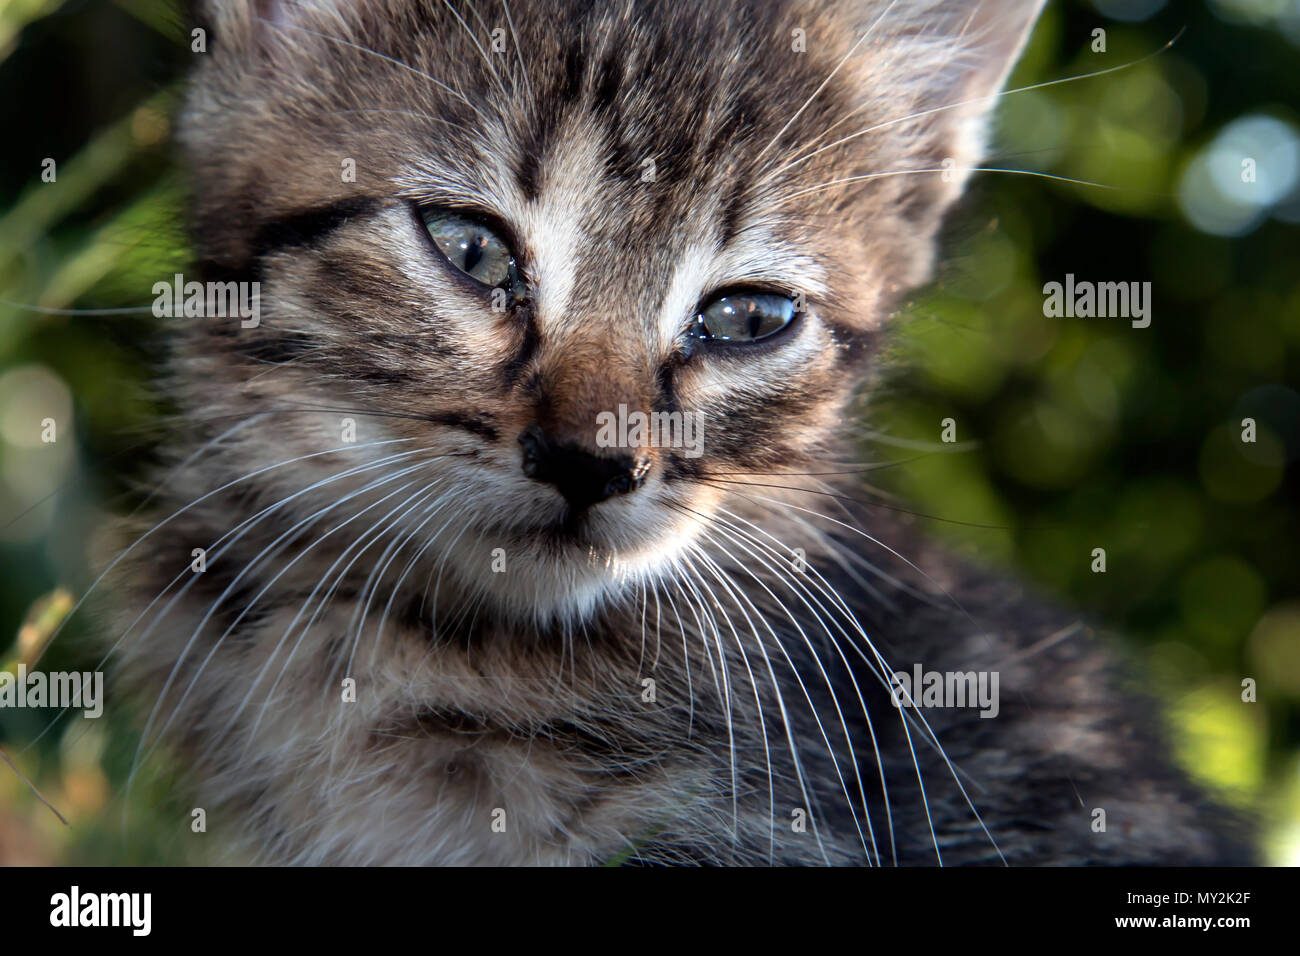 Bébé chaton gris face close up portrait Banque D'Images